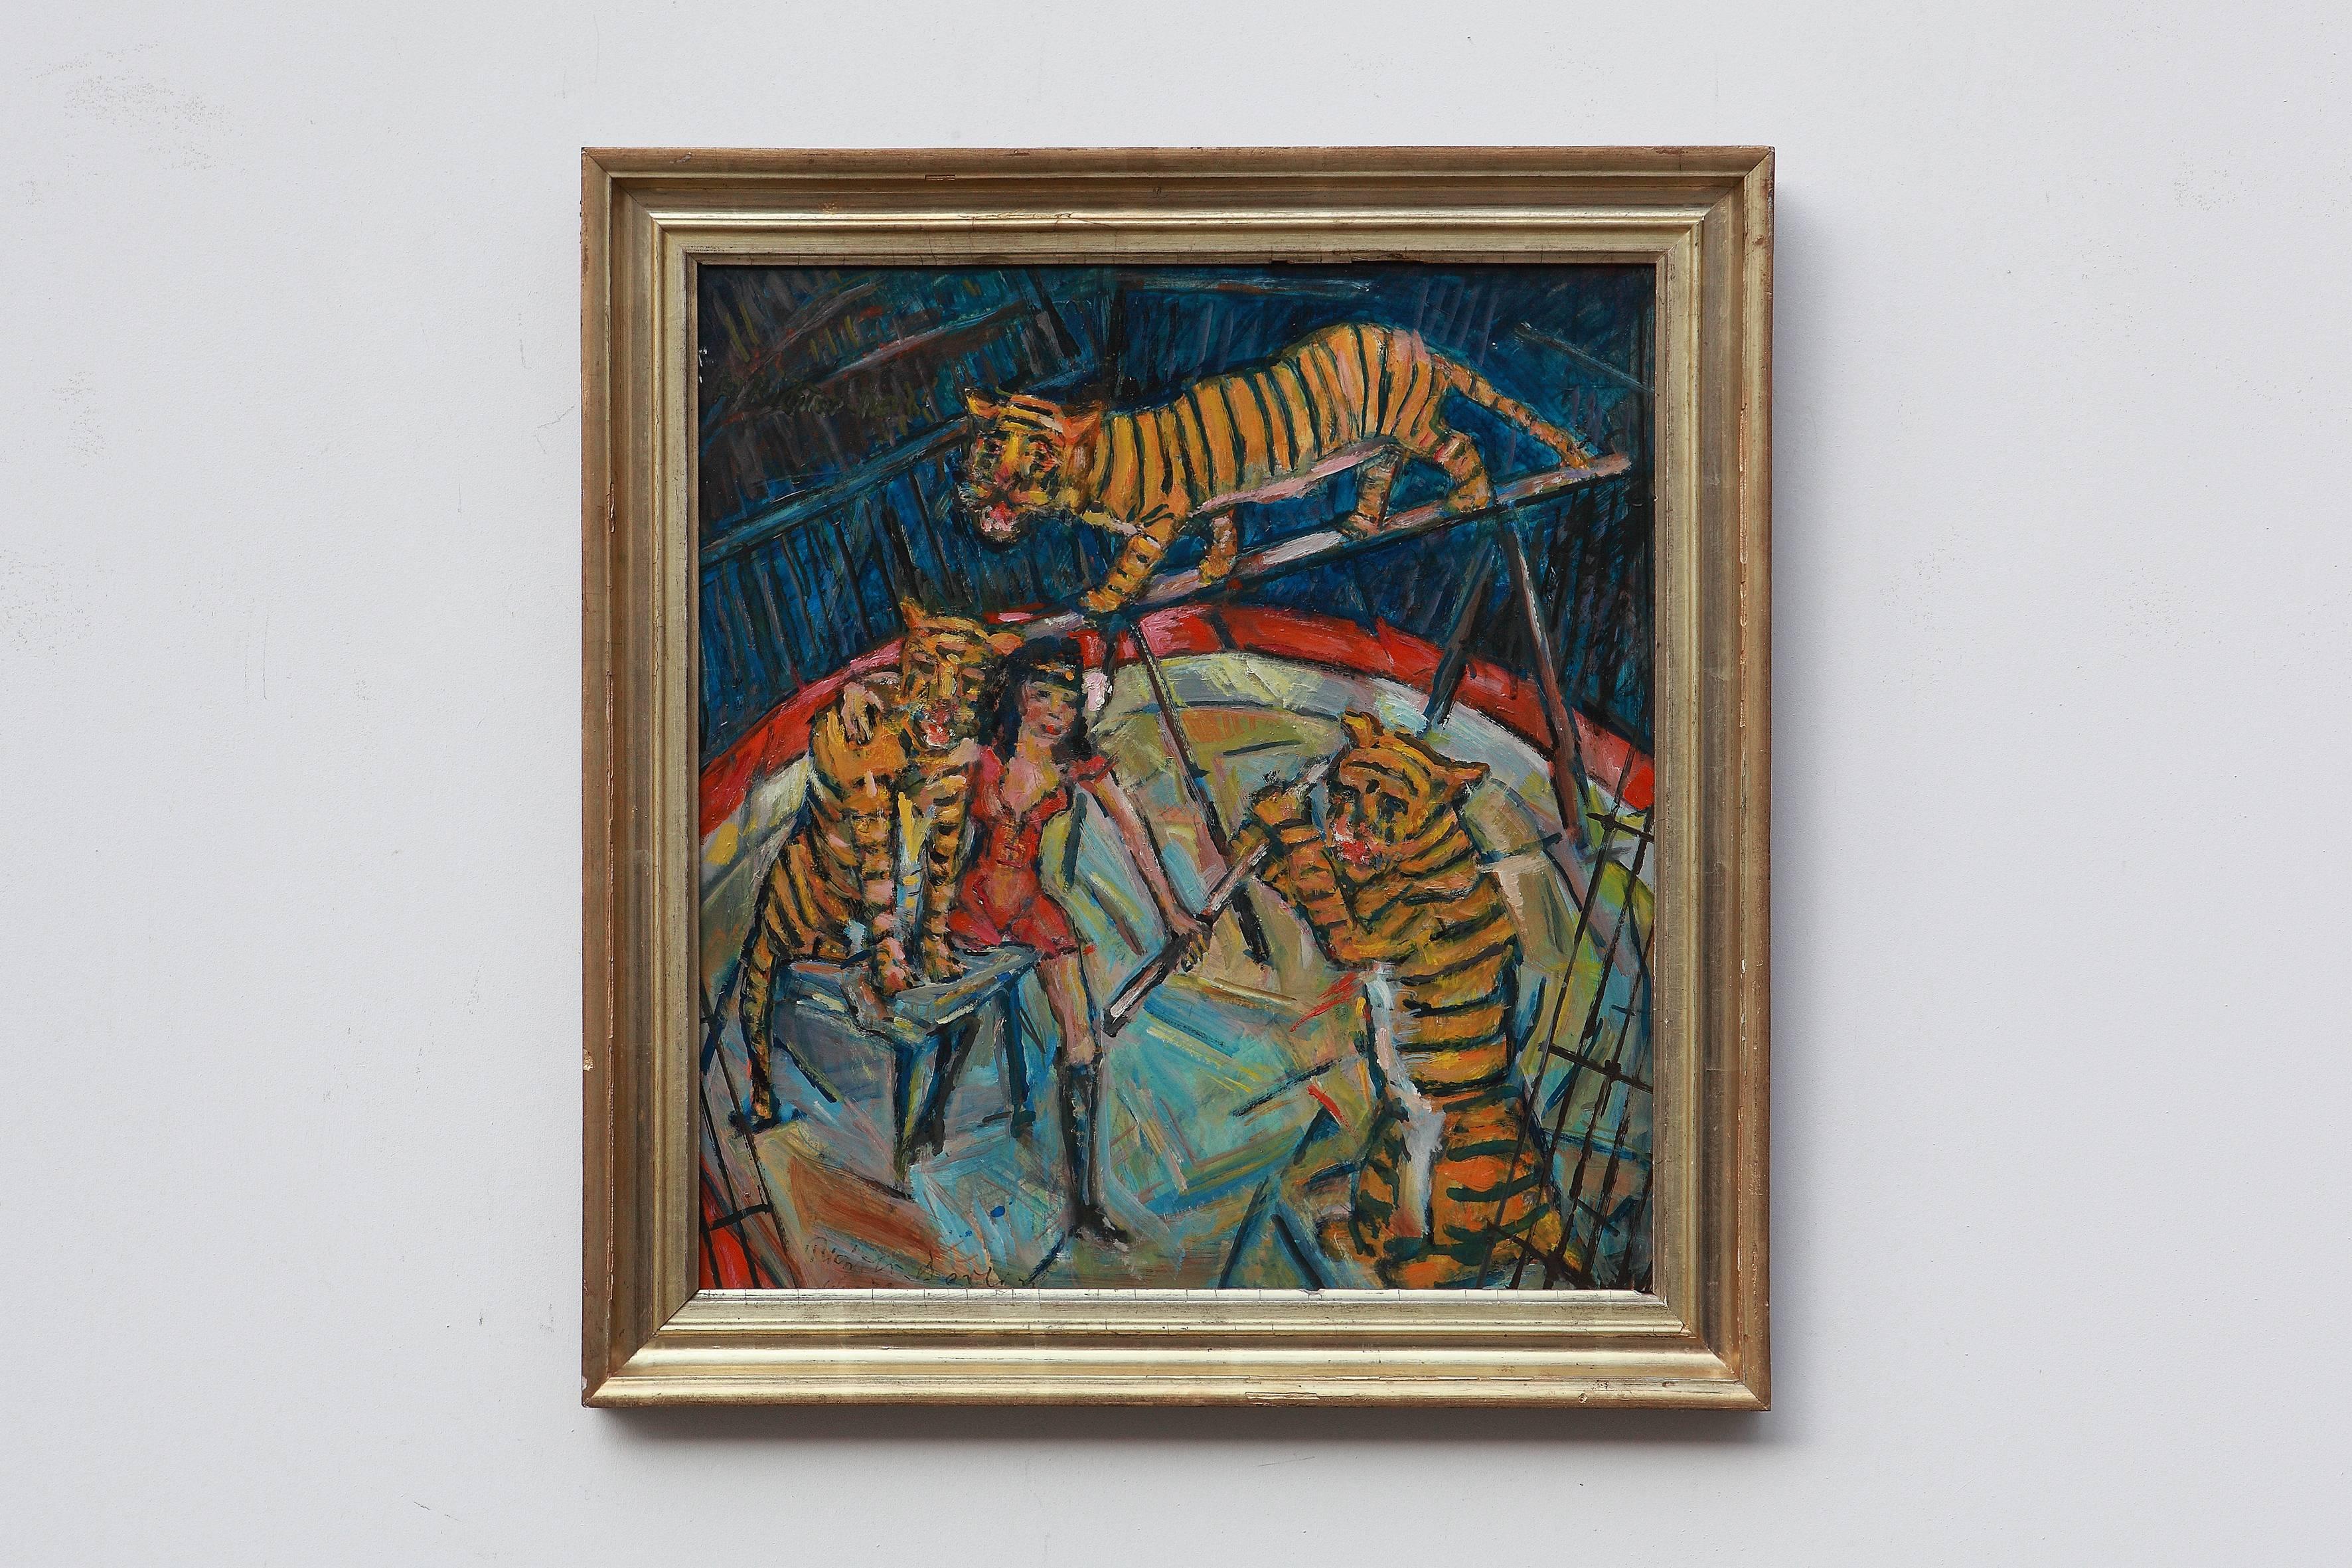 Heinrich Richter-Berlin - Peinture à l'huile - Formation de tigre, 1979 - Painting de Heinrich Richter (b.1884)